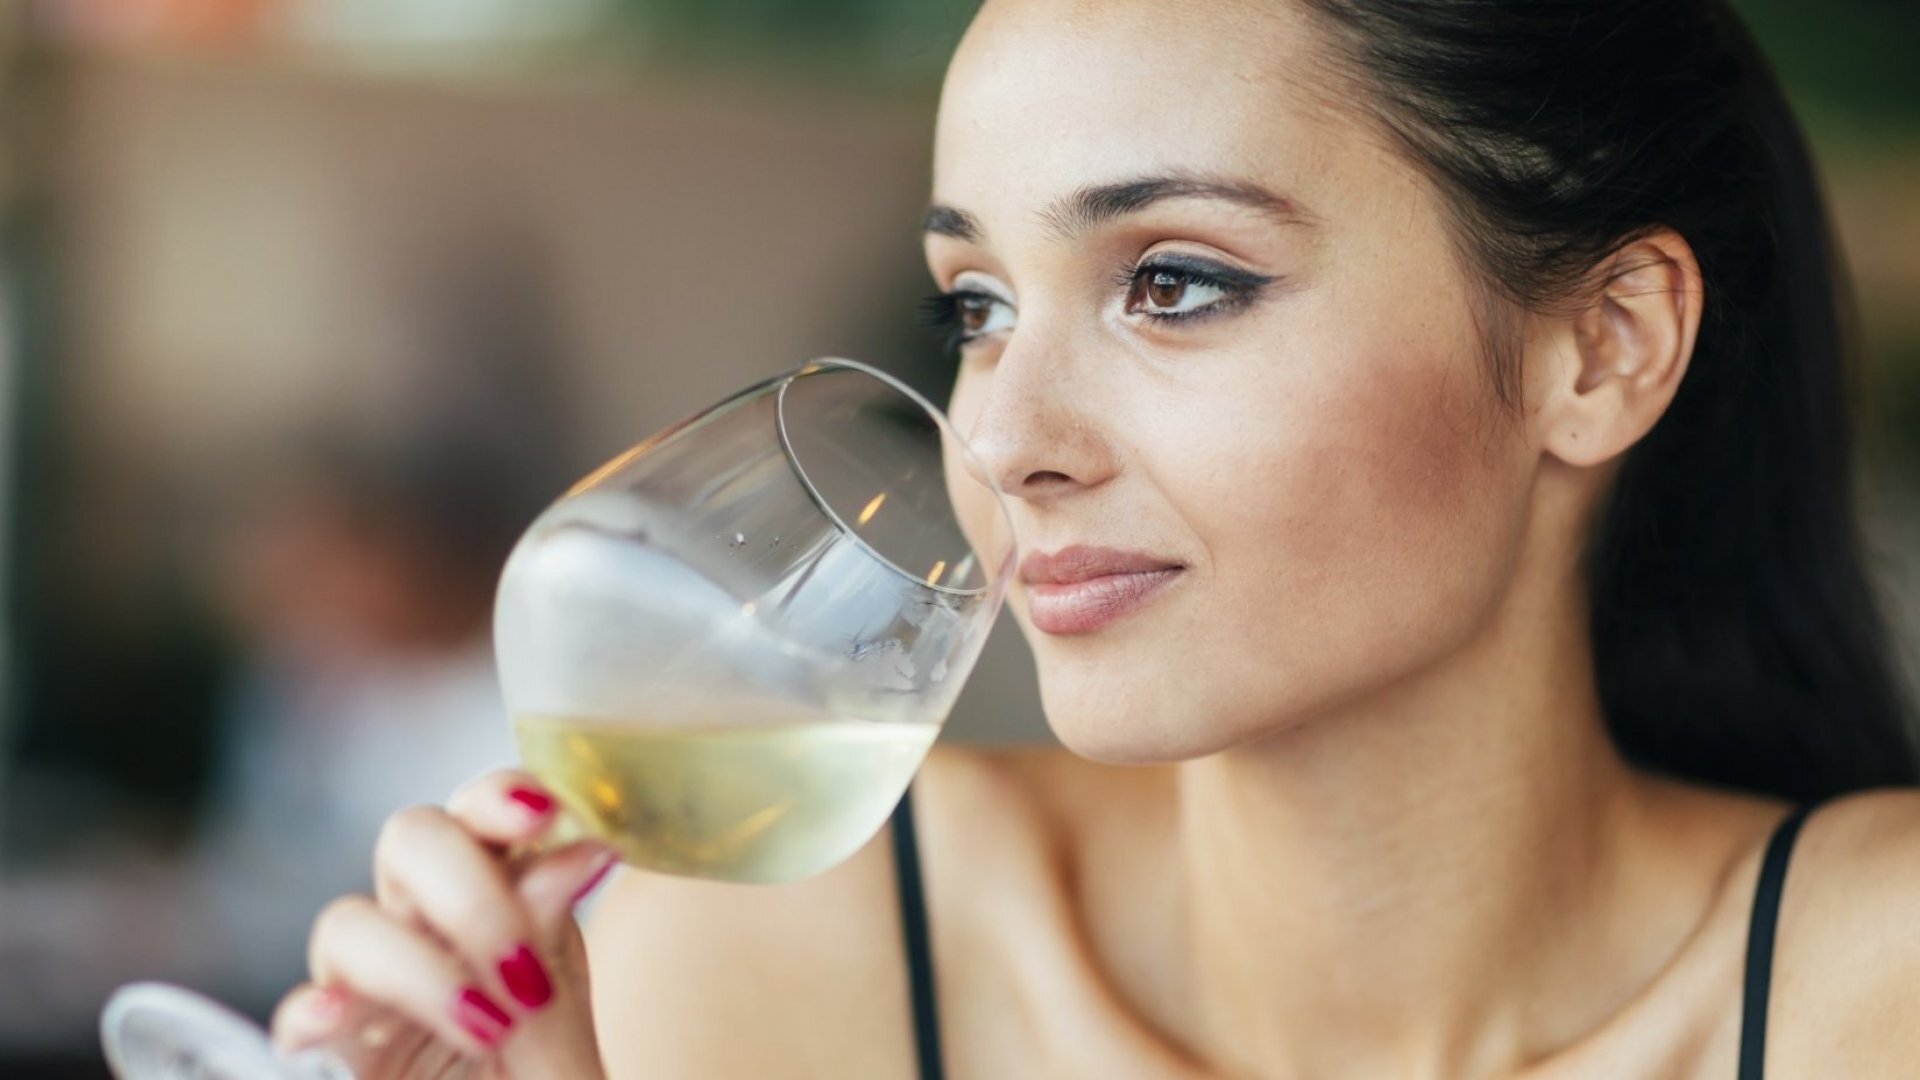 Врачи предупредили, что один бокал вина в день повышает вероятность развития рака молочной железы